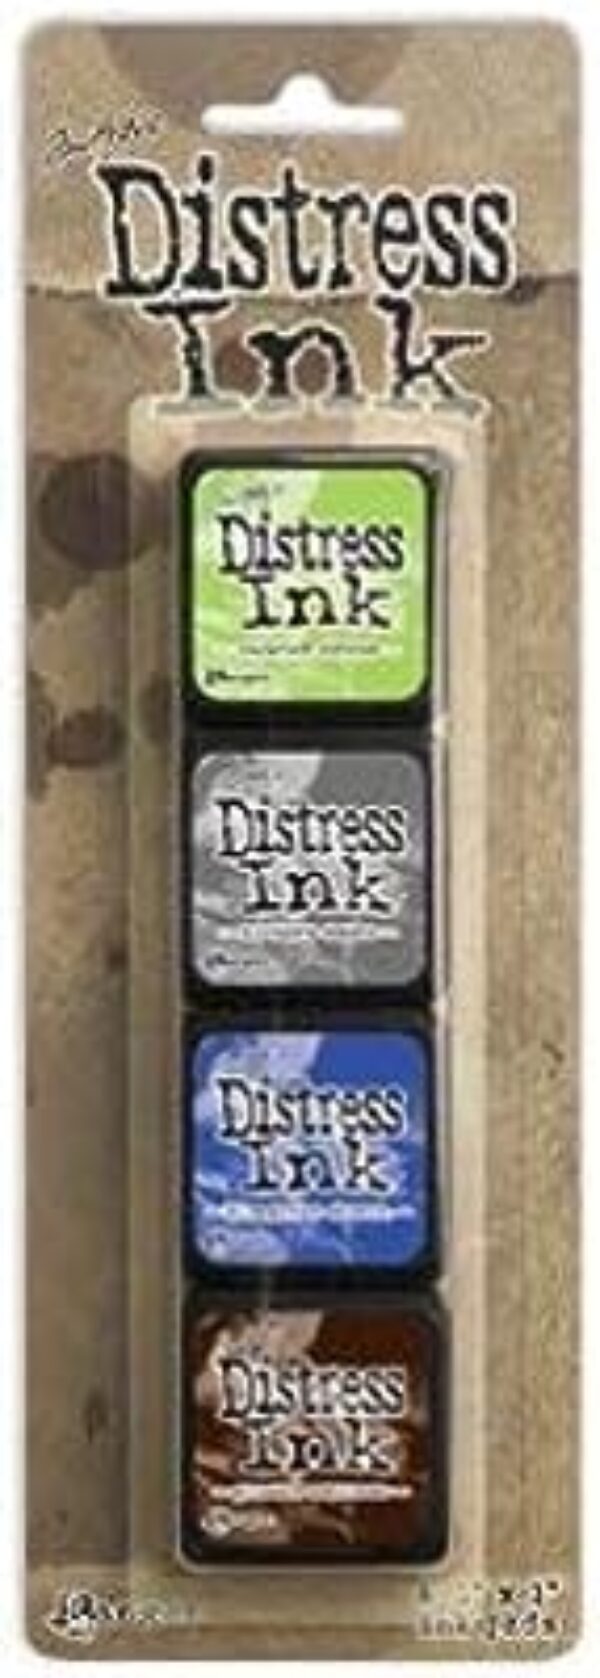 Distress Mini Ink Pads Kit 14